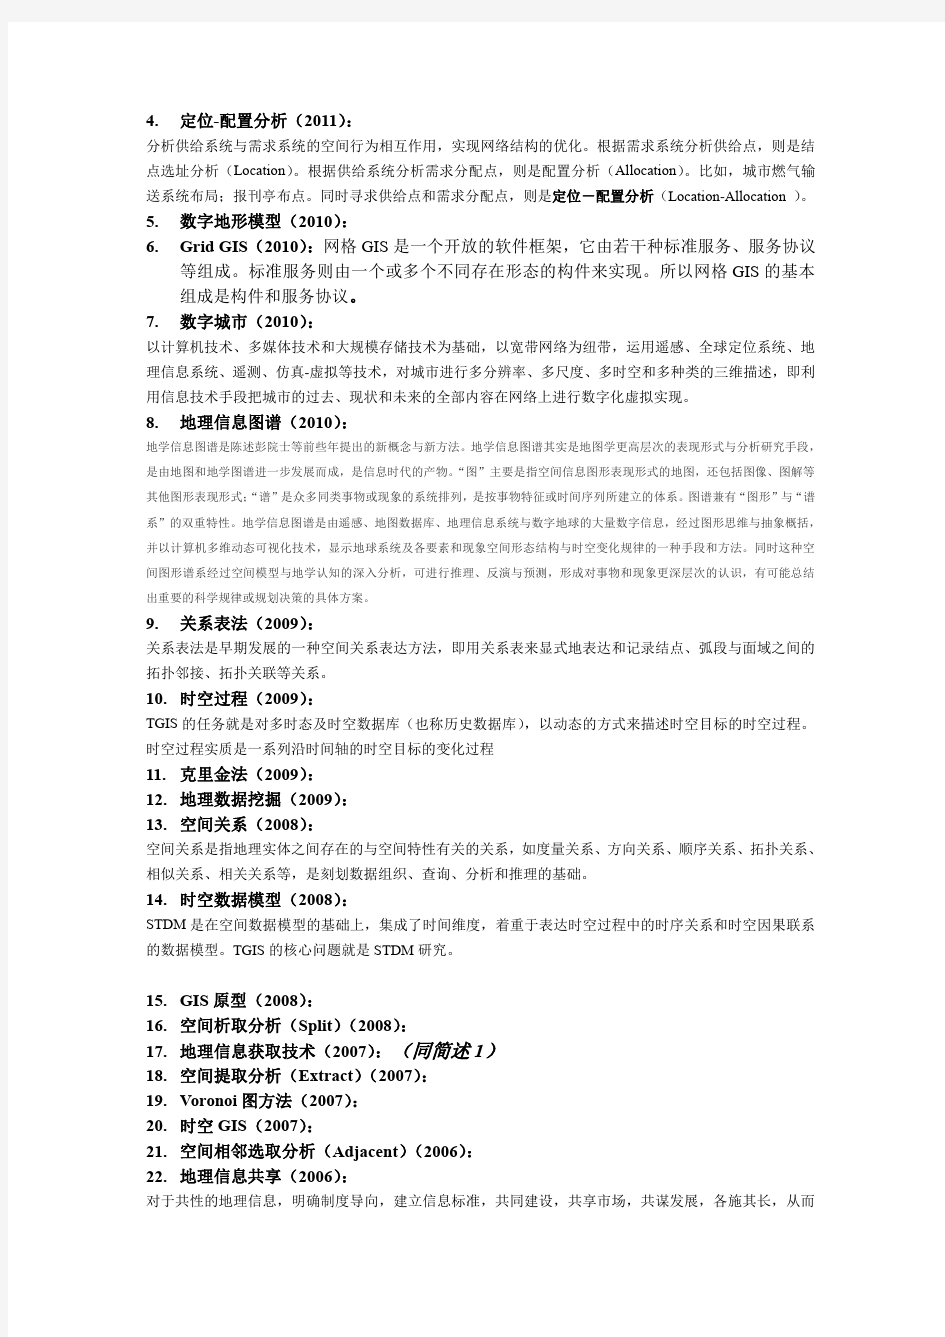 南京大学考博真题《地理信息系统》即《地理学综合》2007～2011